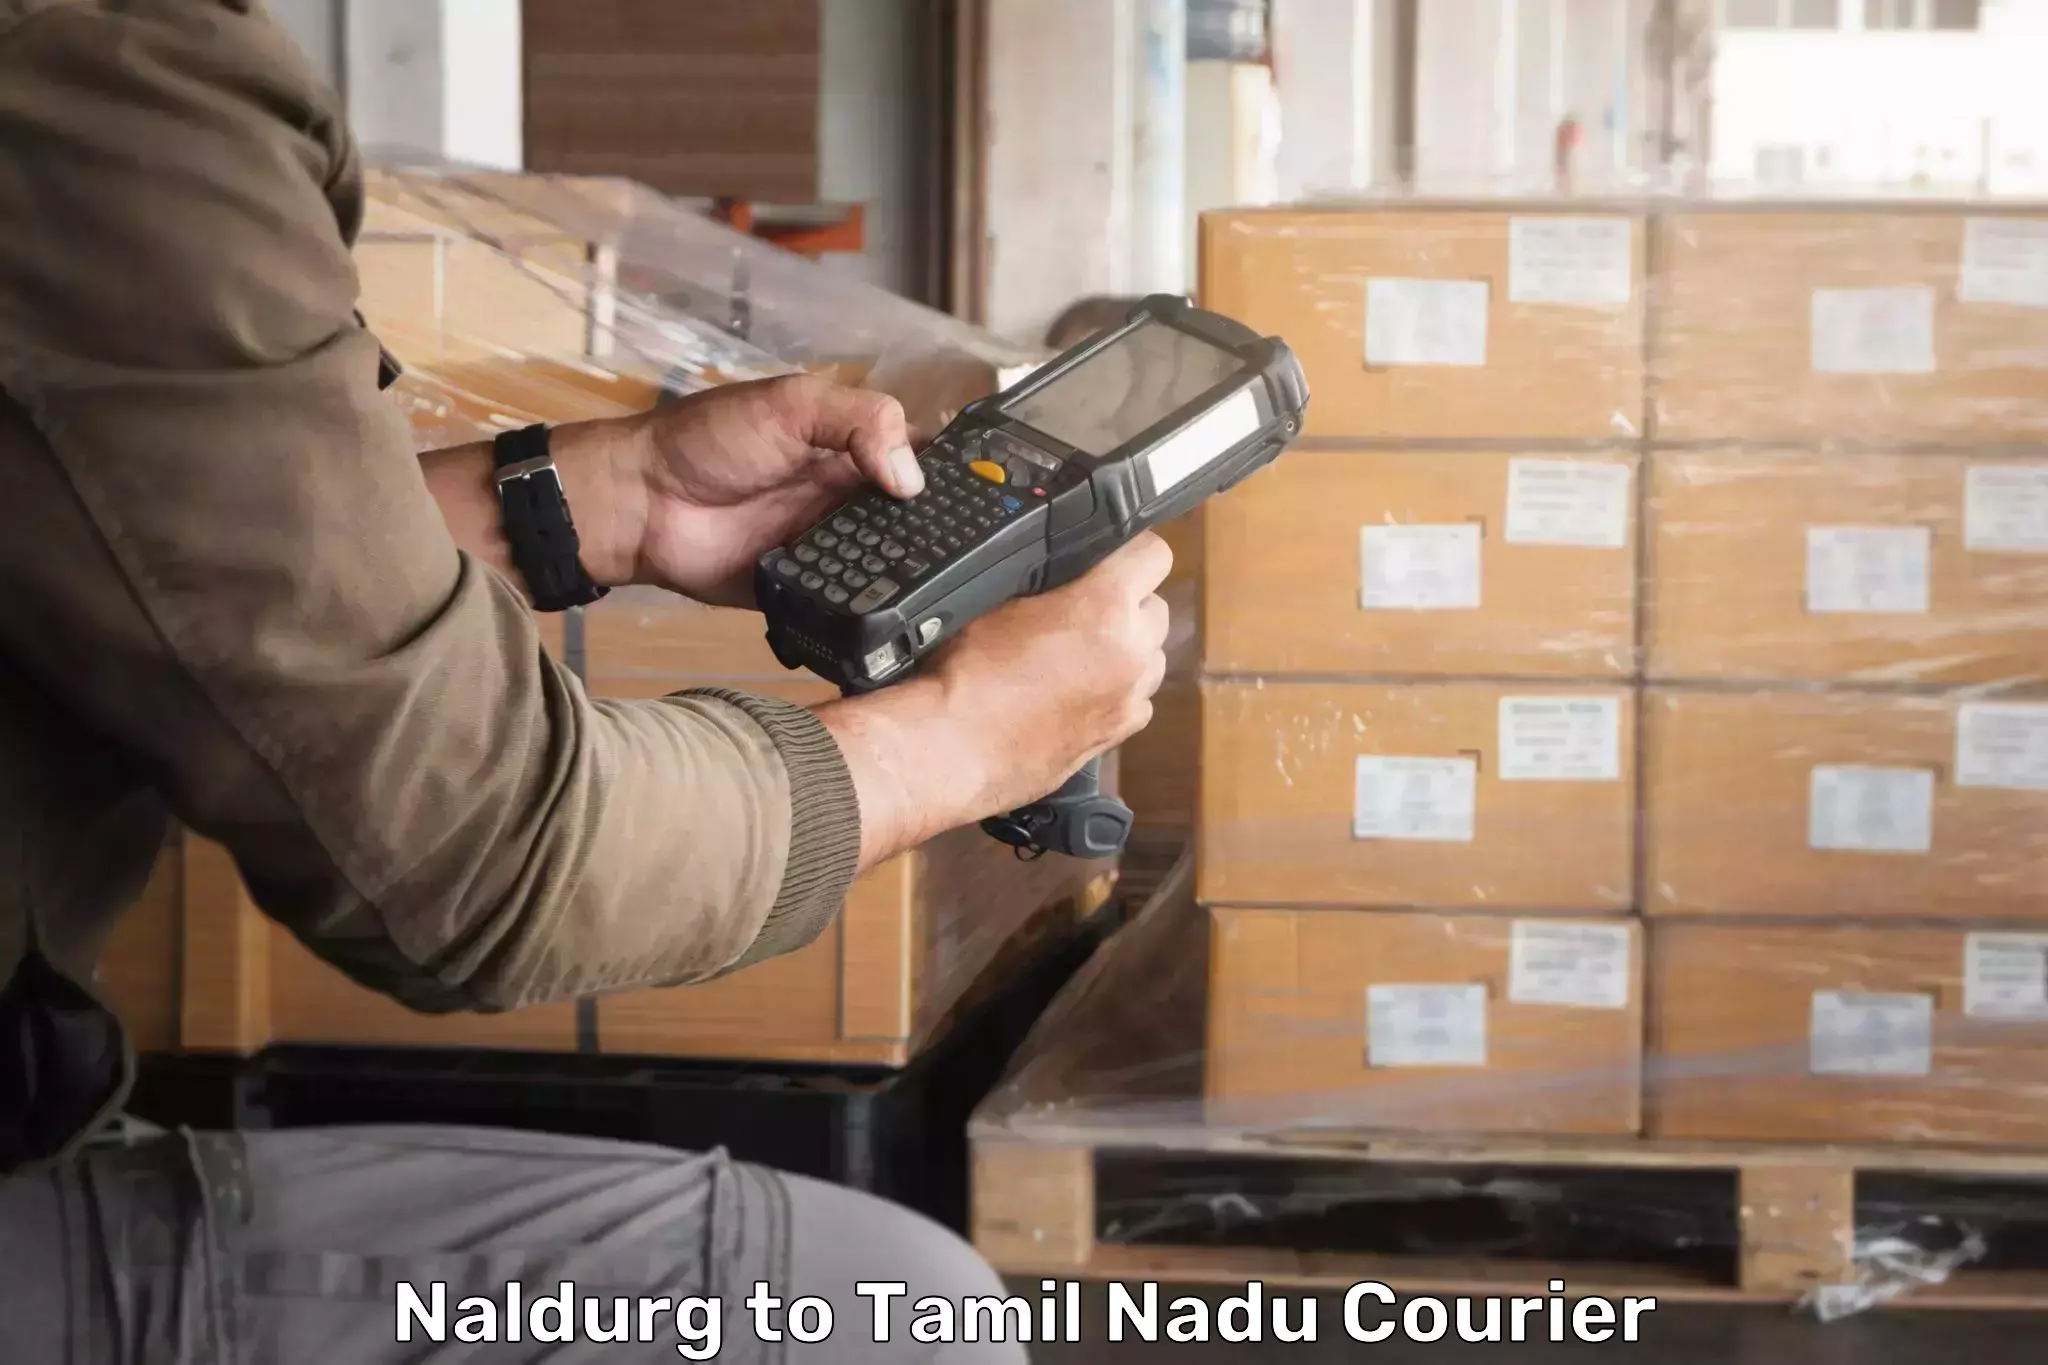 Courier app Naldurg to IIIT Tiruchirappalli